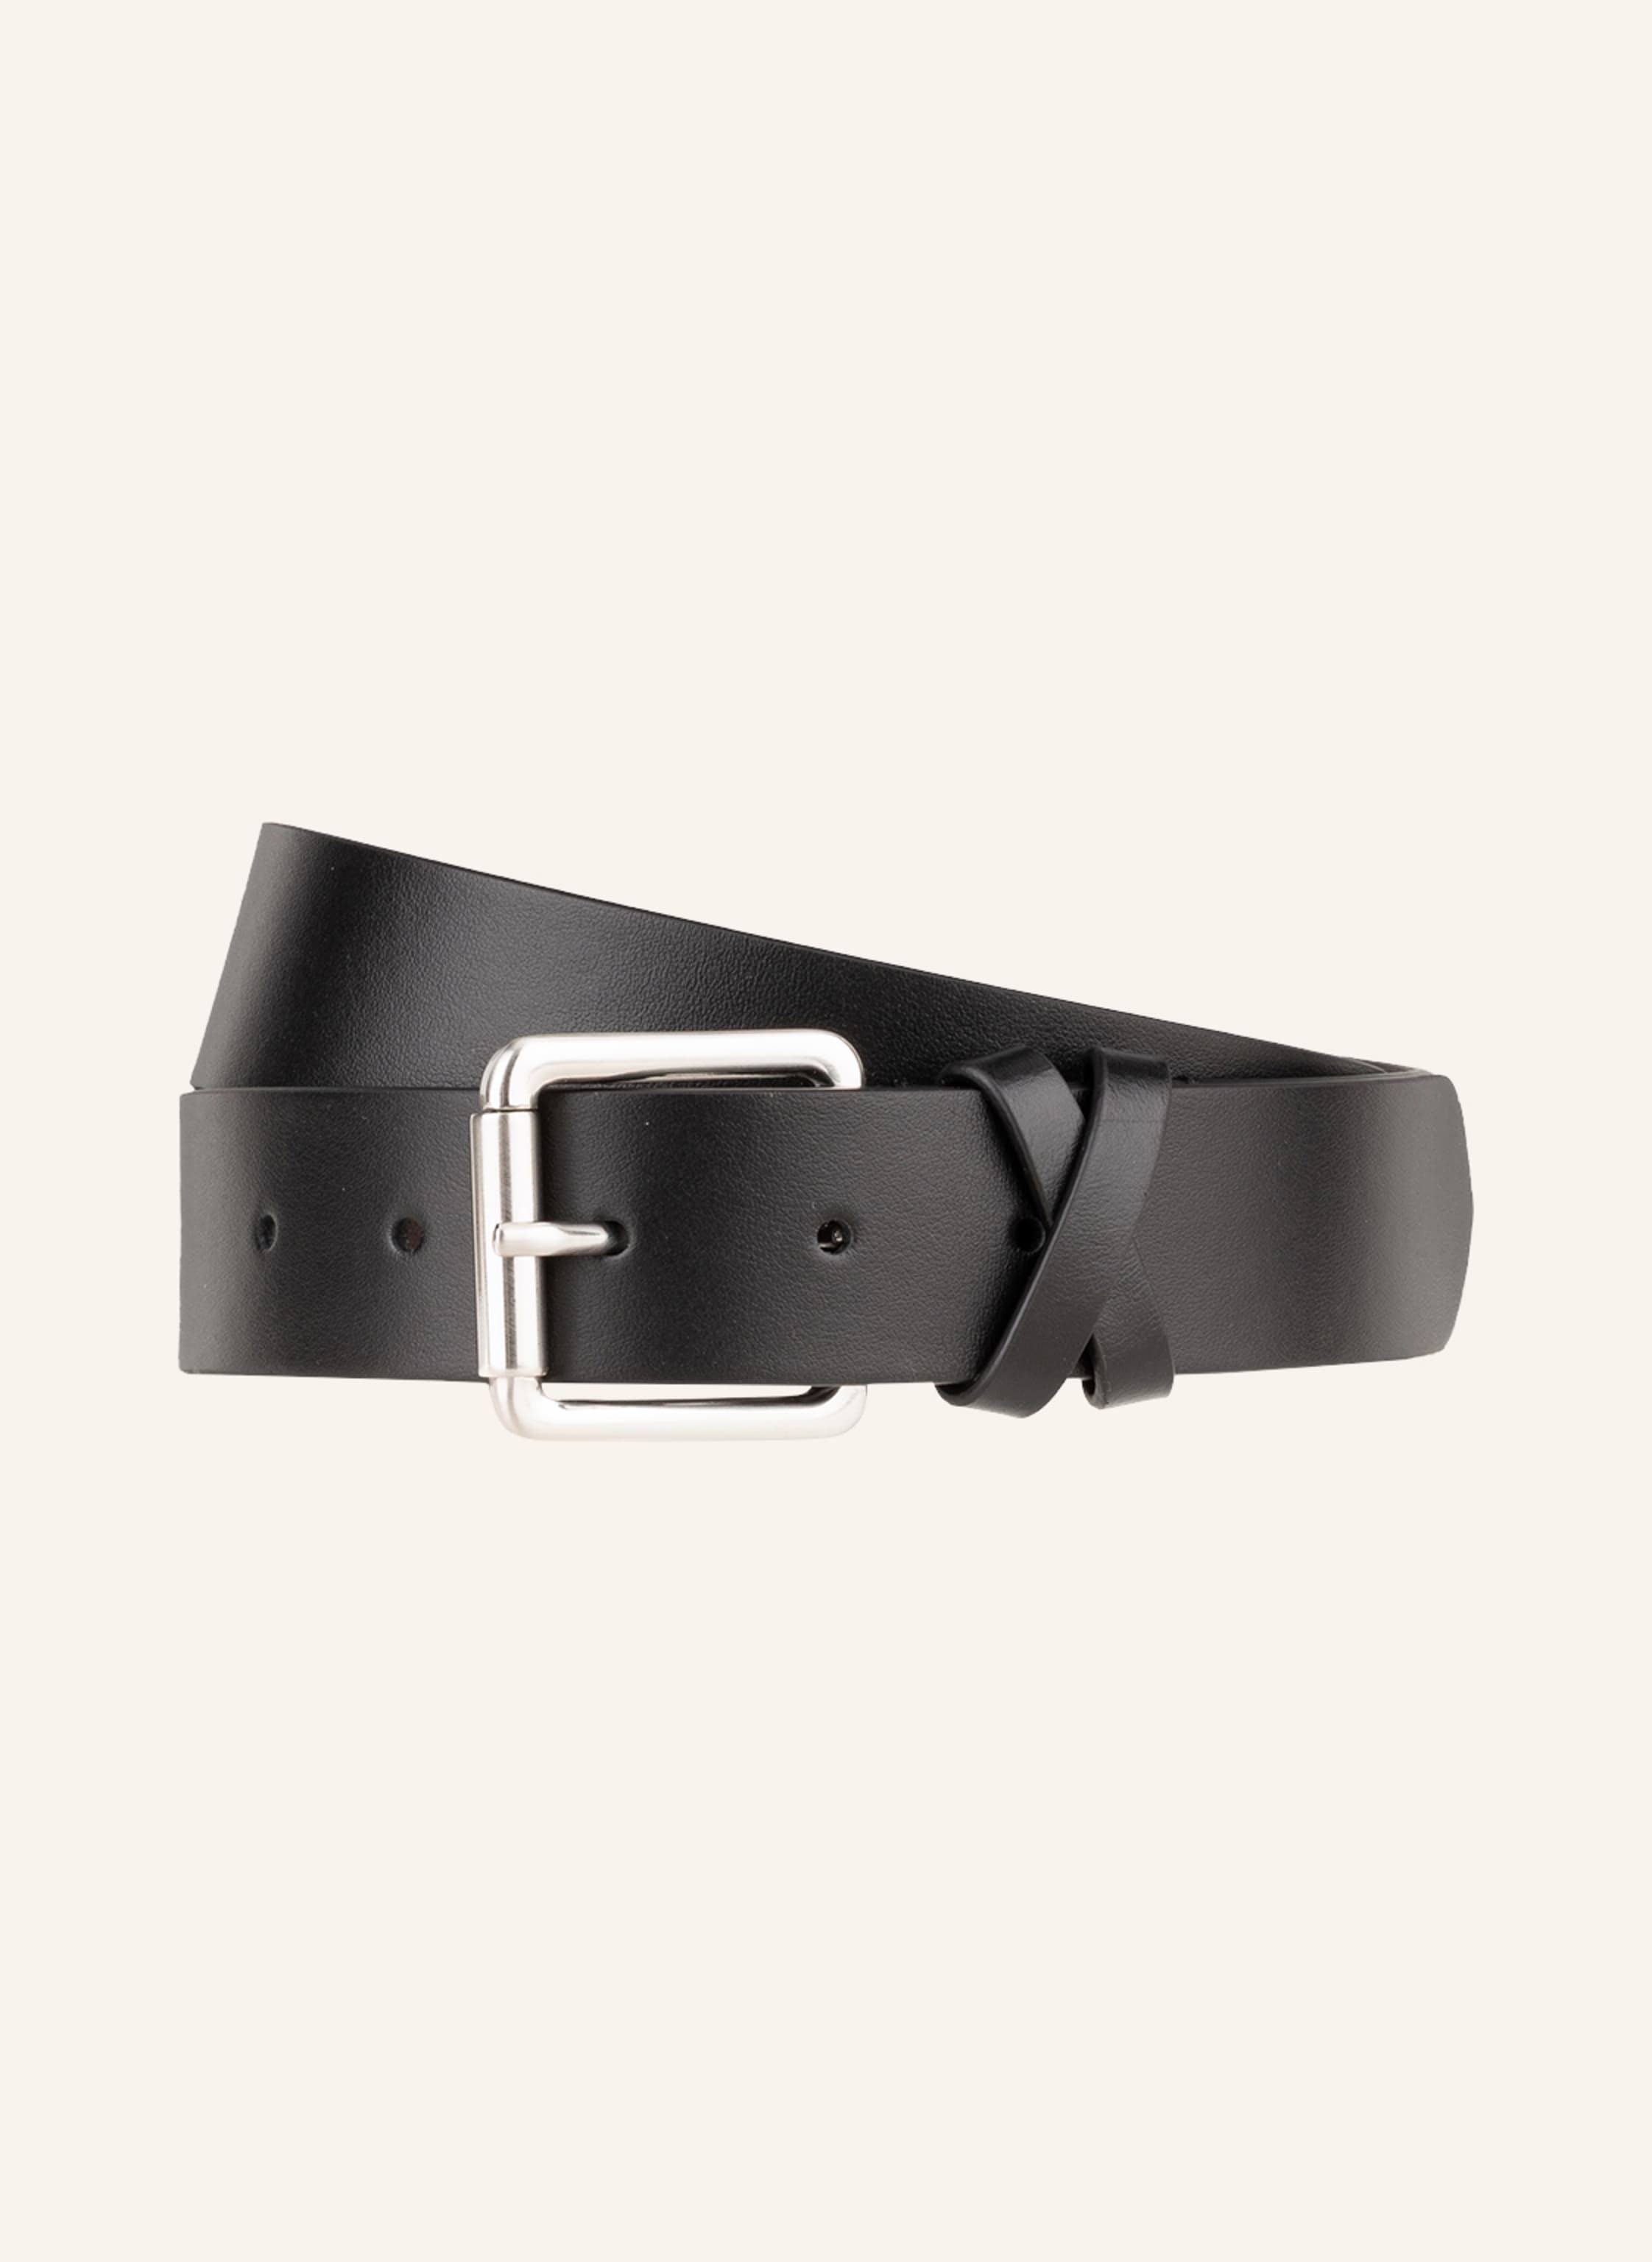 REISS Leather belt ANNEXE in black | Breuninger